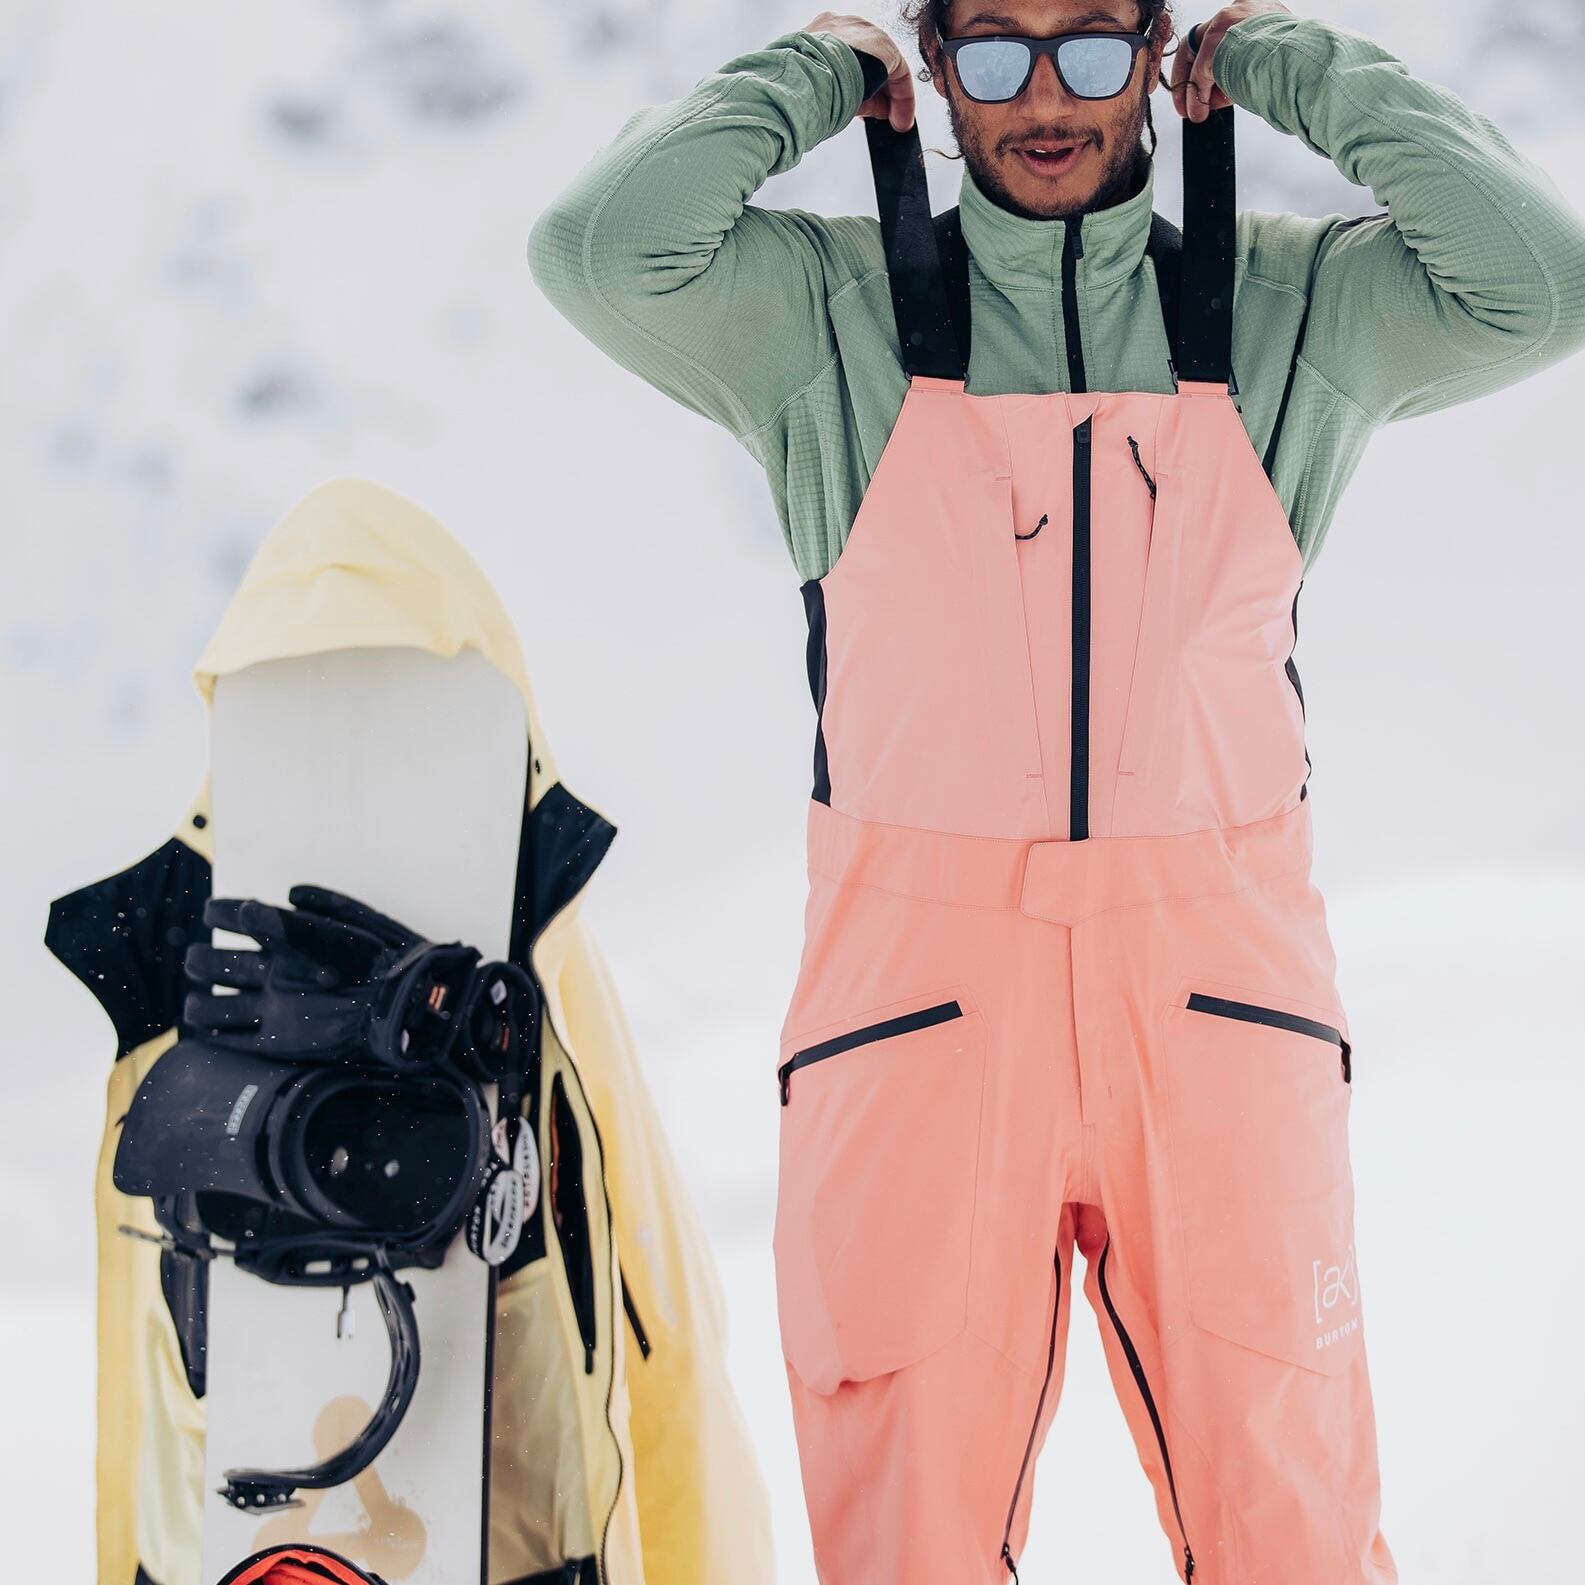 BURTON スキー・スノーボードウェア メンズ ビブパンツ GORE-TEX